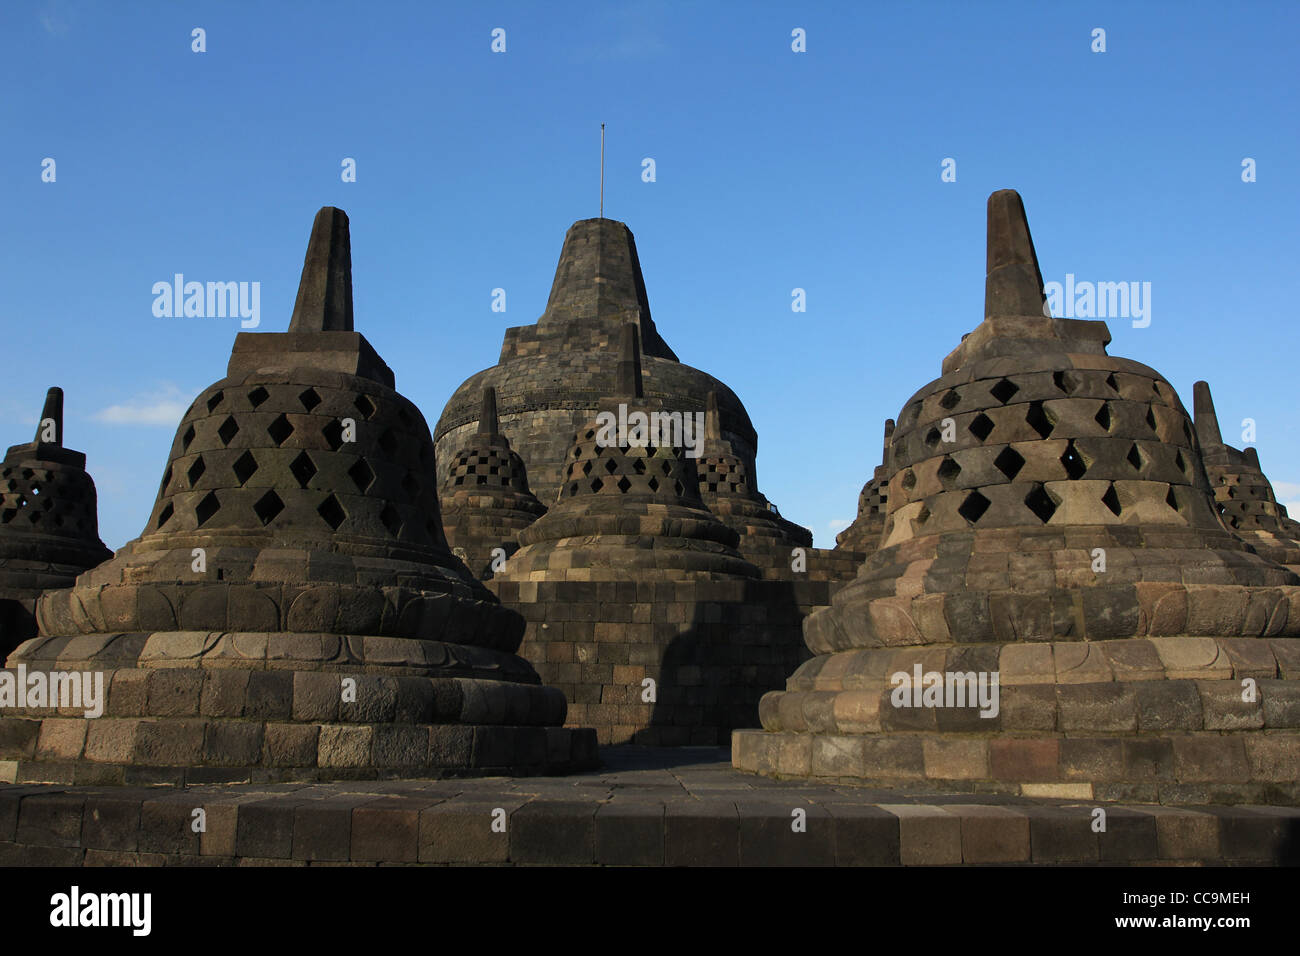 Timbre temple bouddhiste Borobudur Indonésie Yogyakarta Java Centrale Site du patrimoine mondial de l'Allégement Banque D'Images